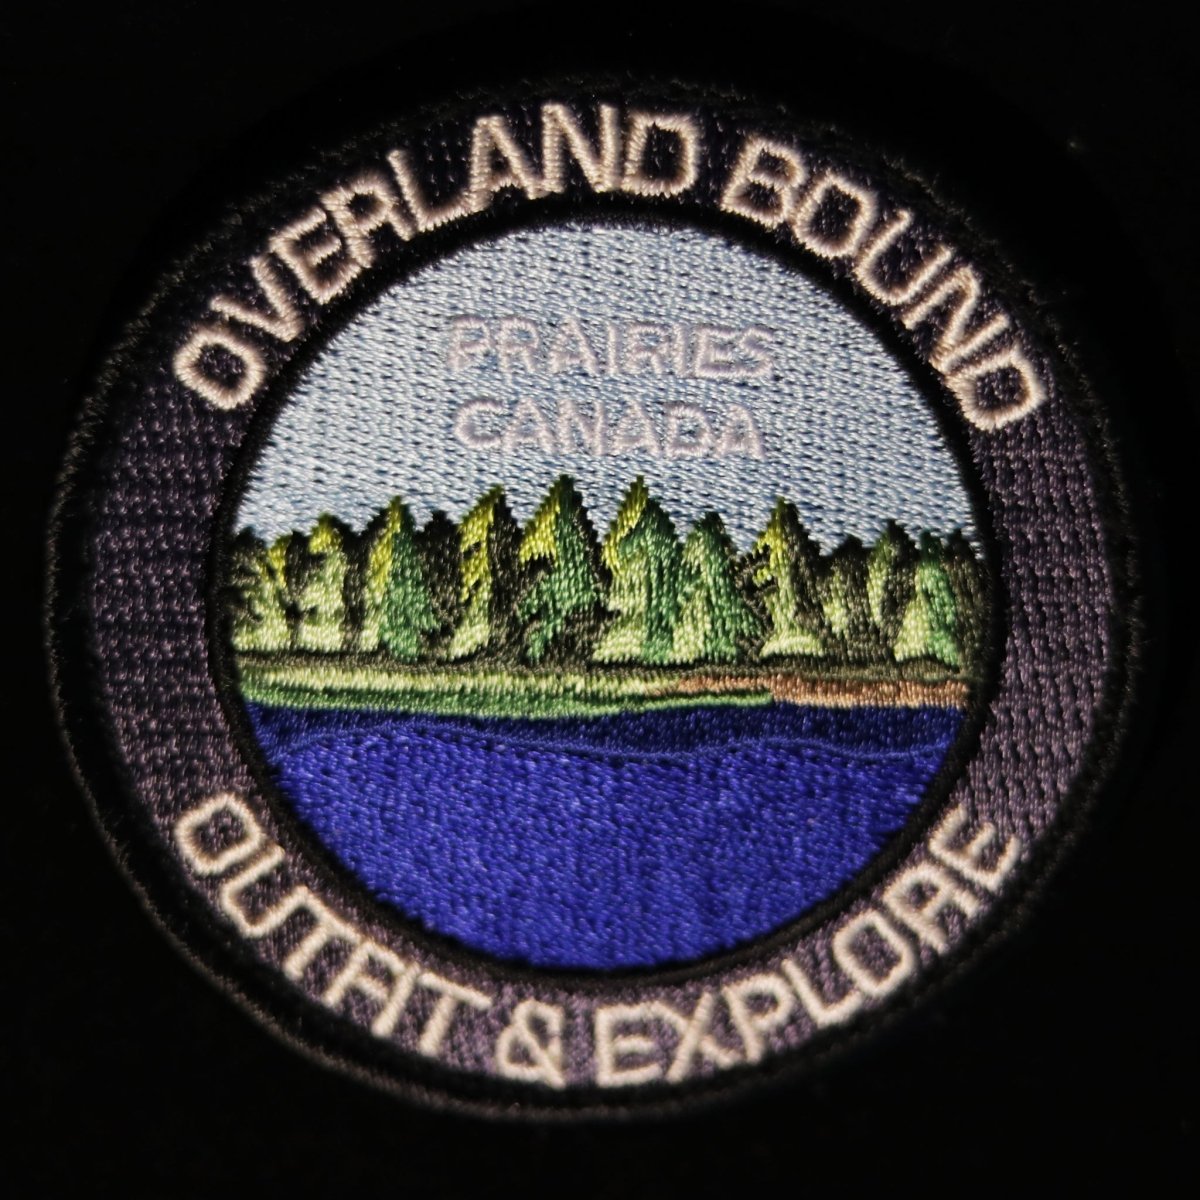 Overland Bound Regional Patches - Overland Bound